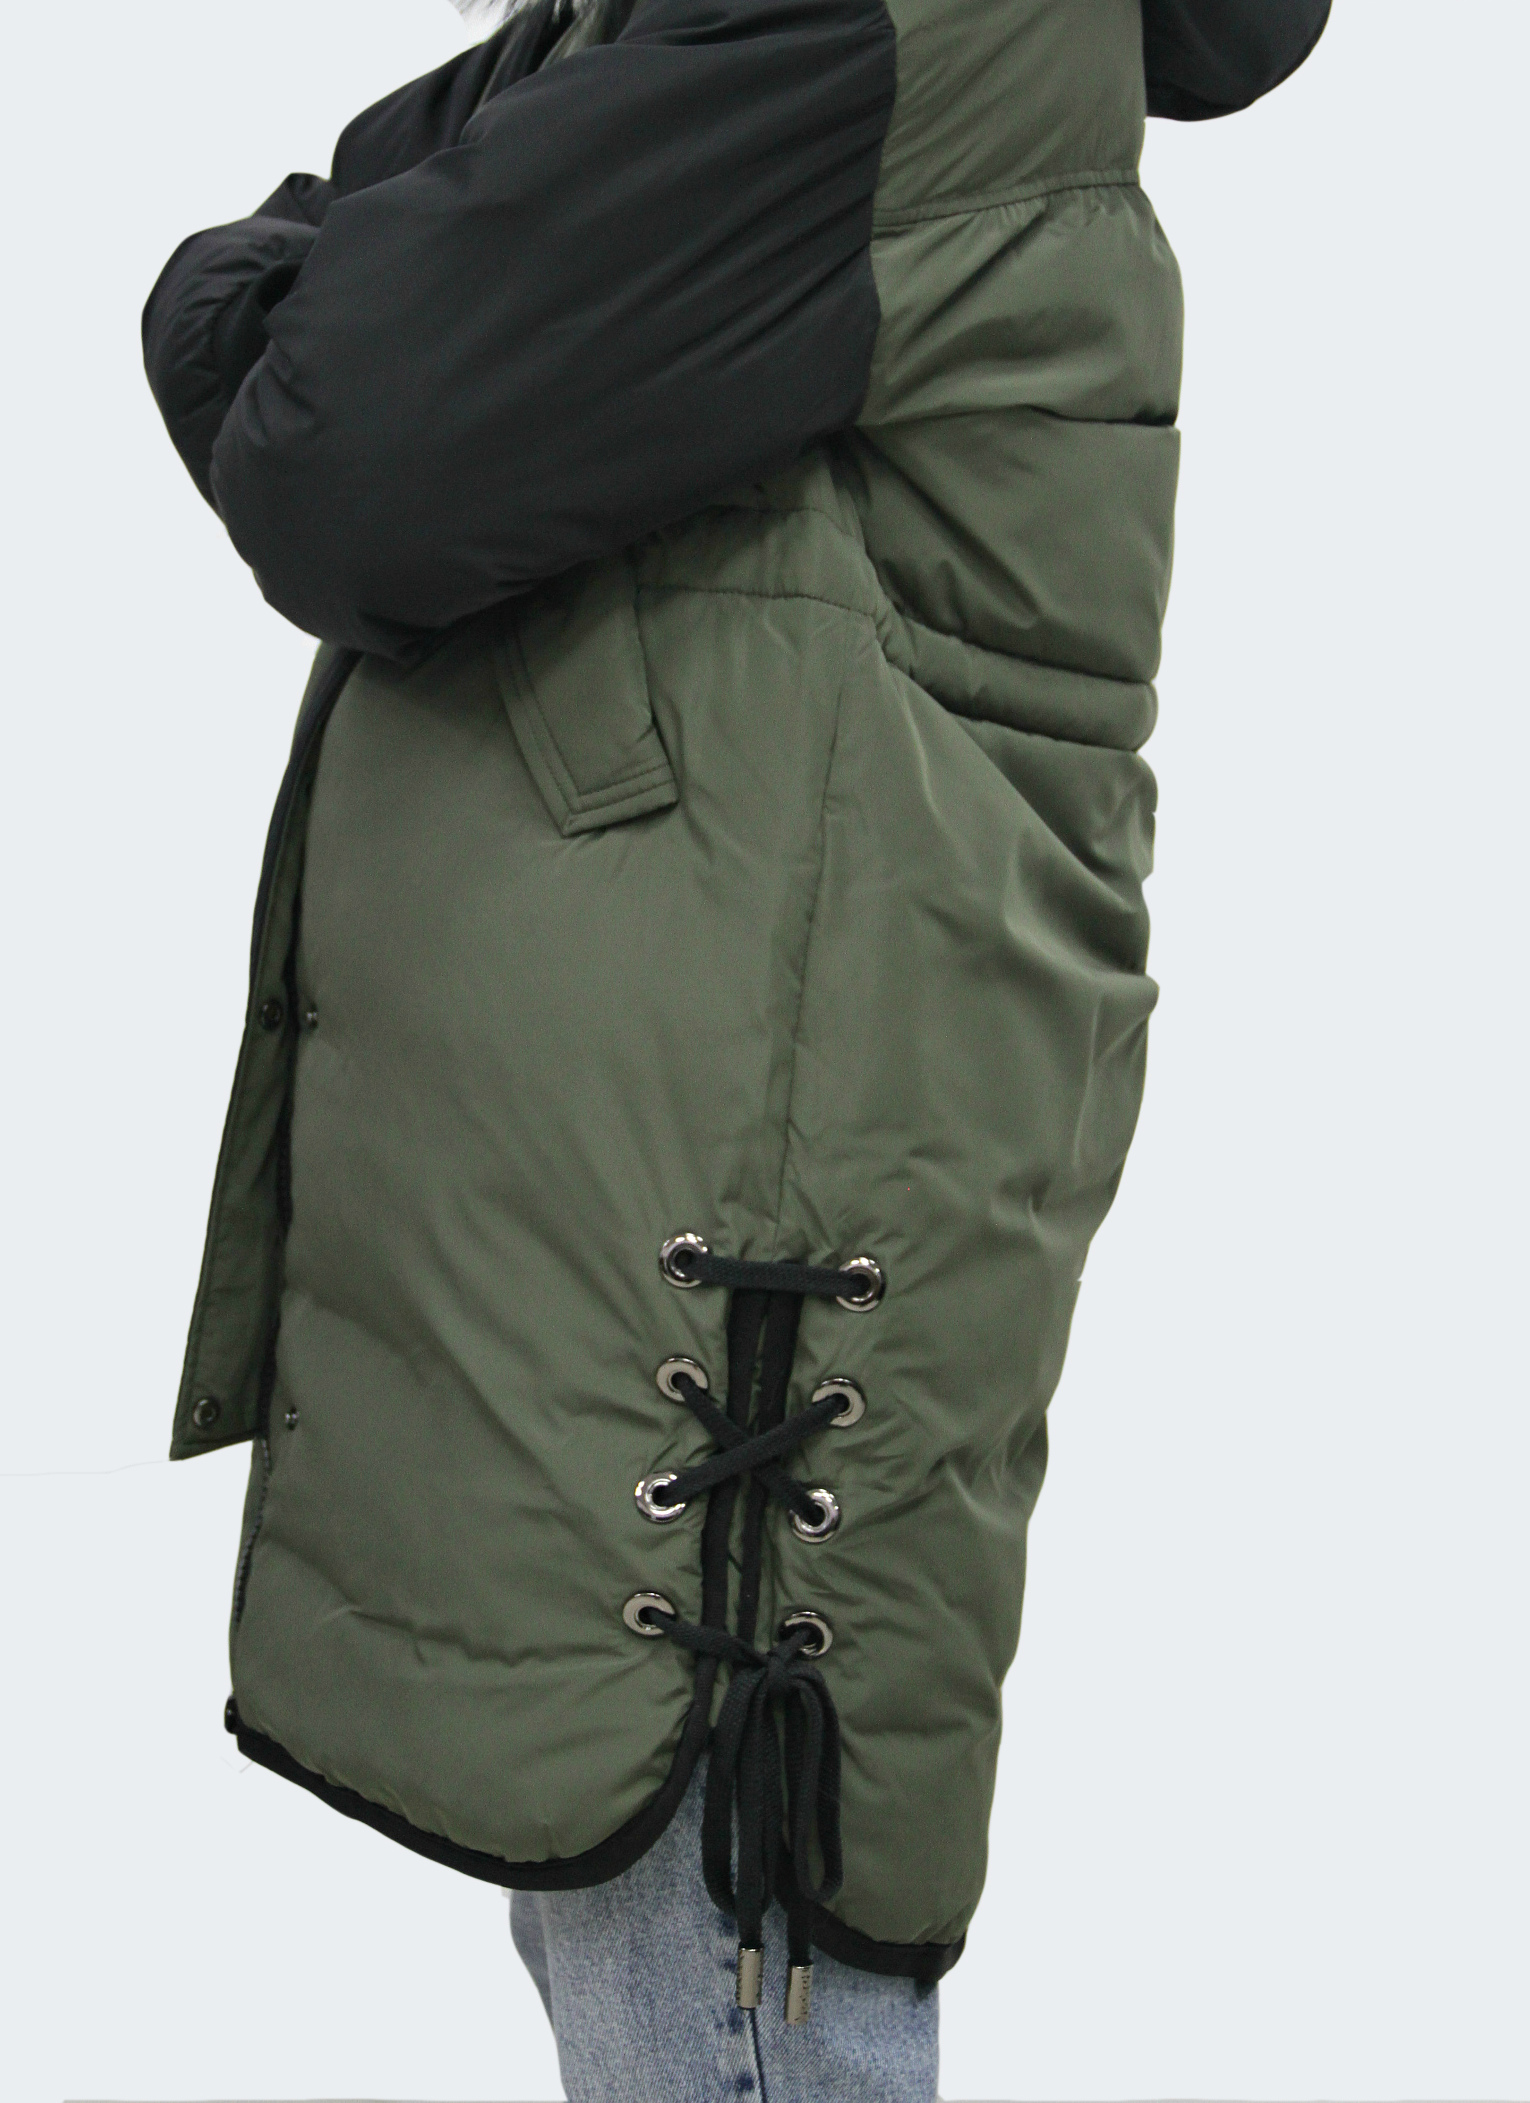 Зимняя женская куртка с мехом (SAN CRONY)